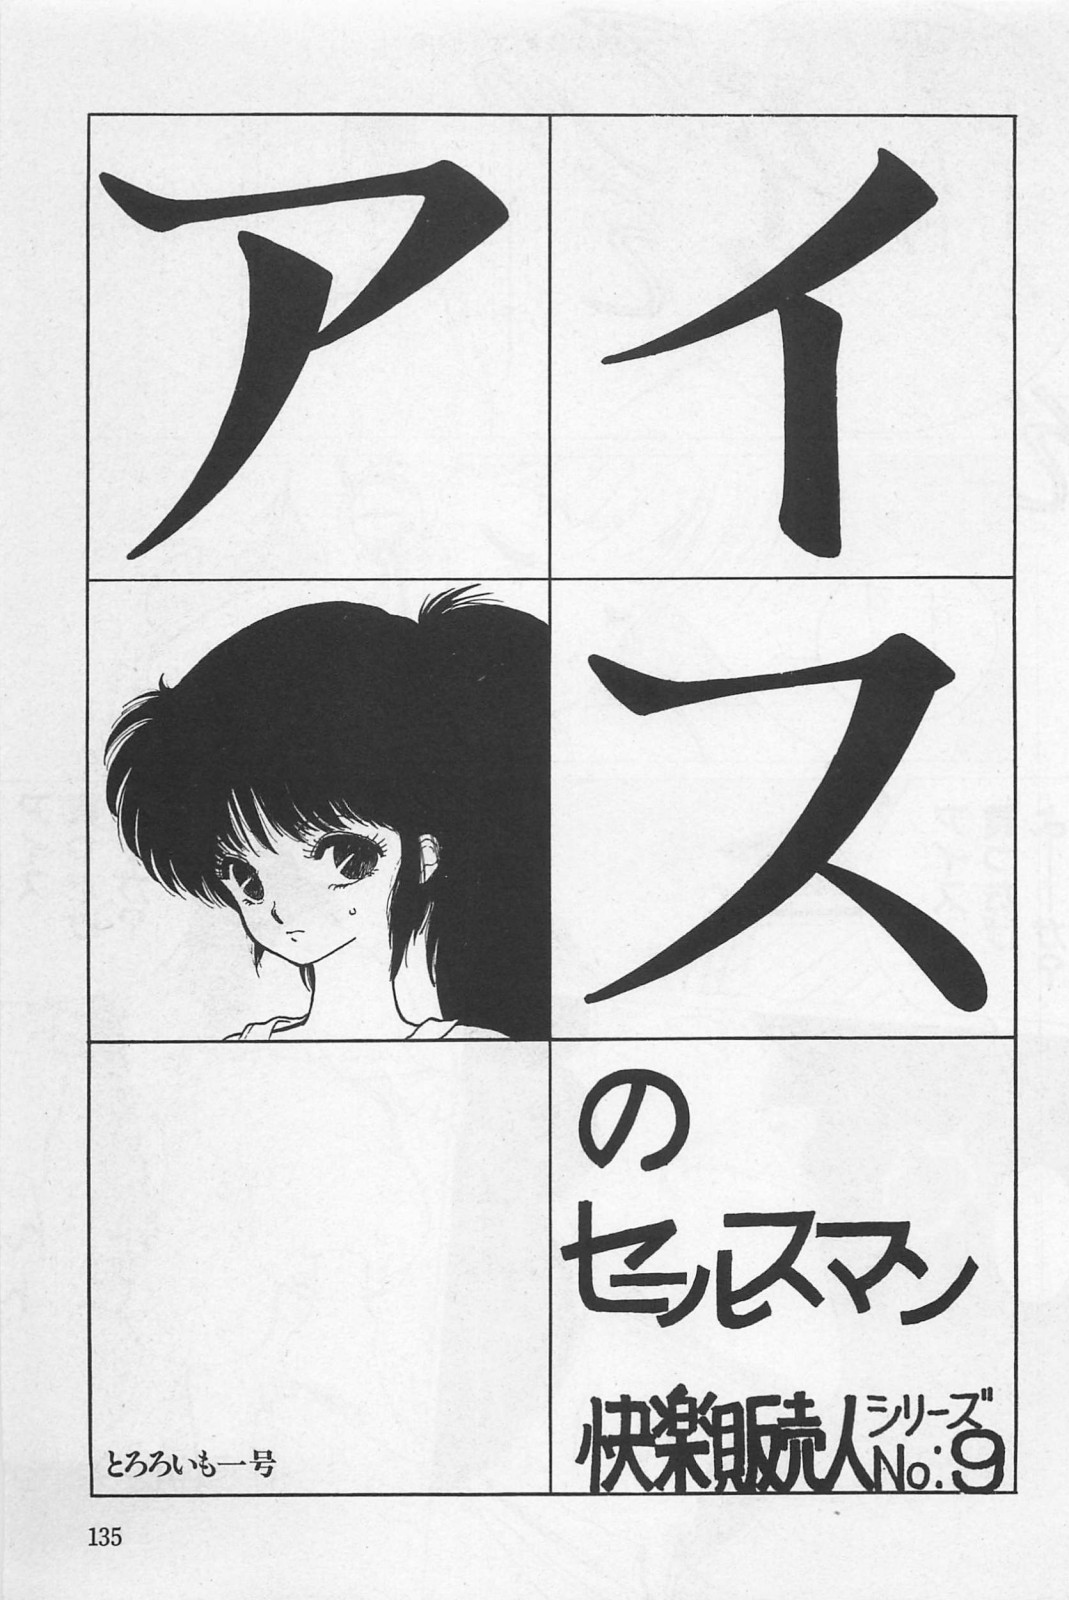 美少女症候群 (1985)